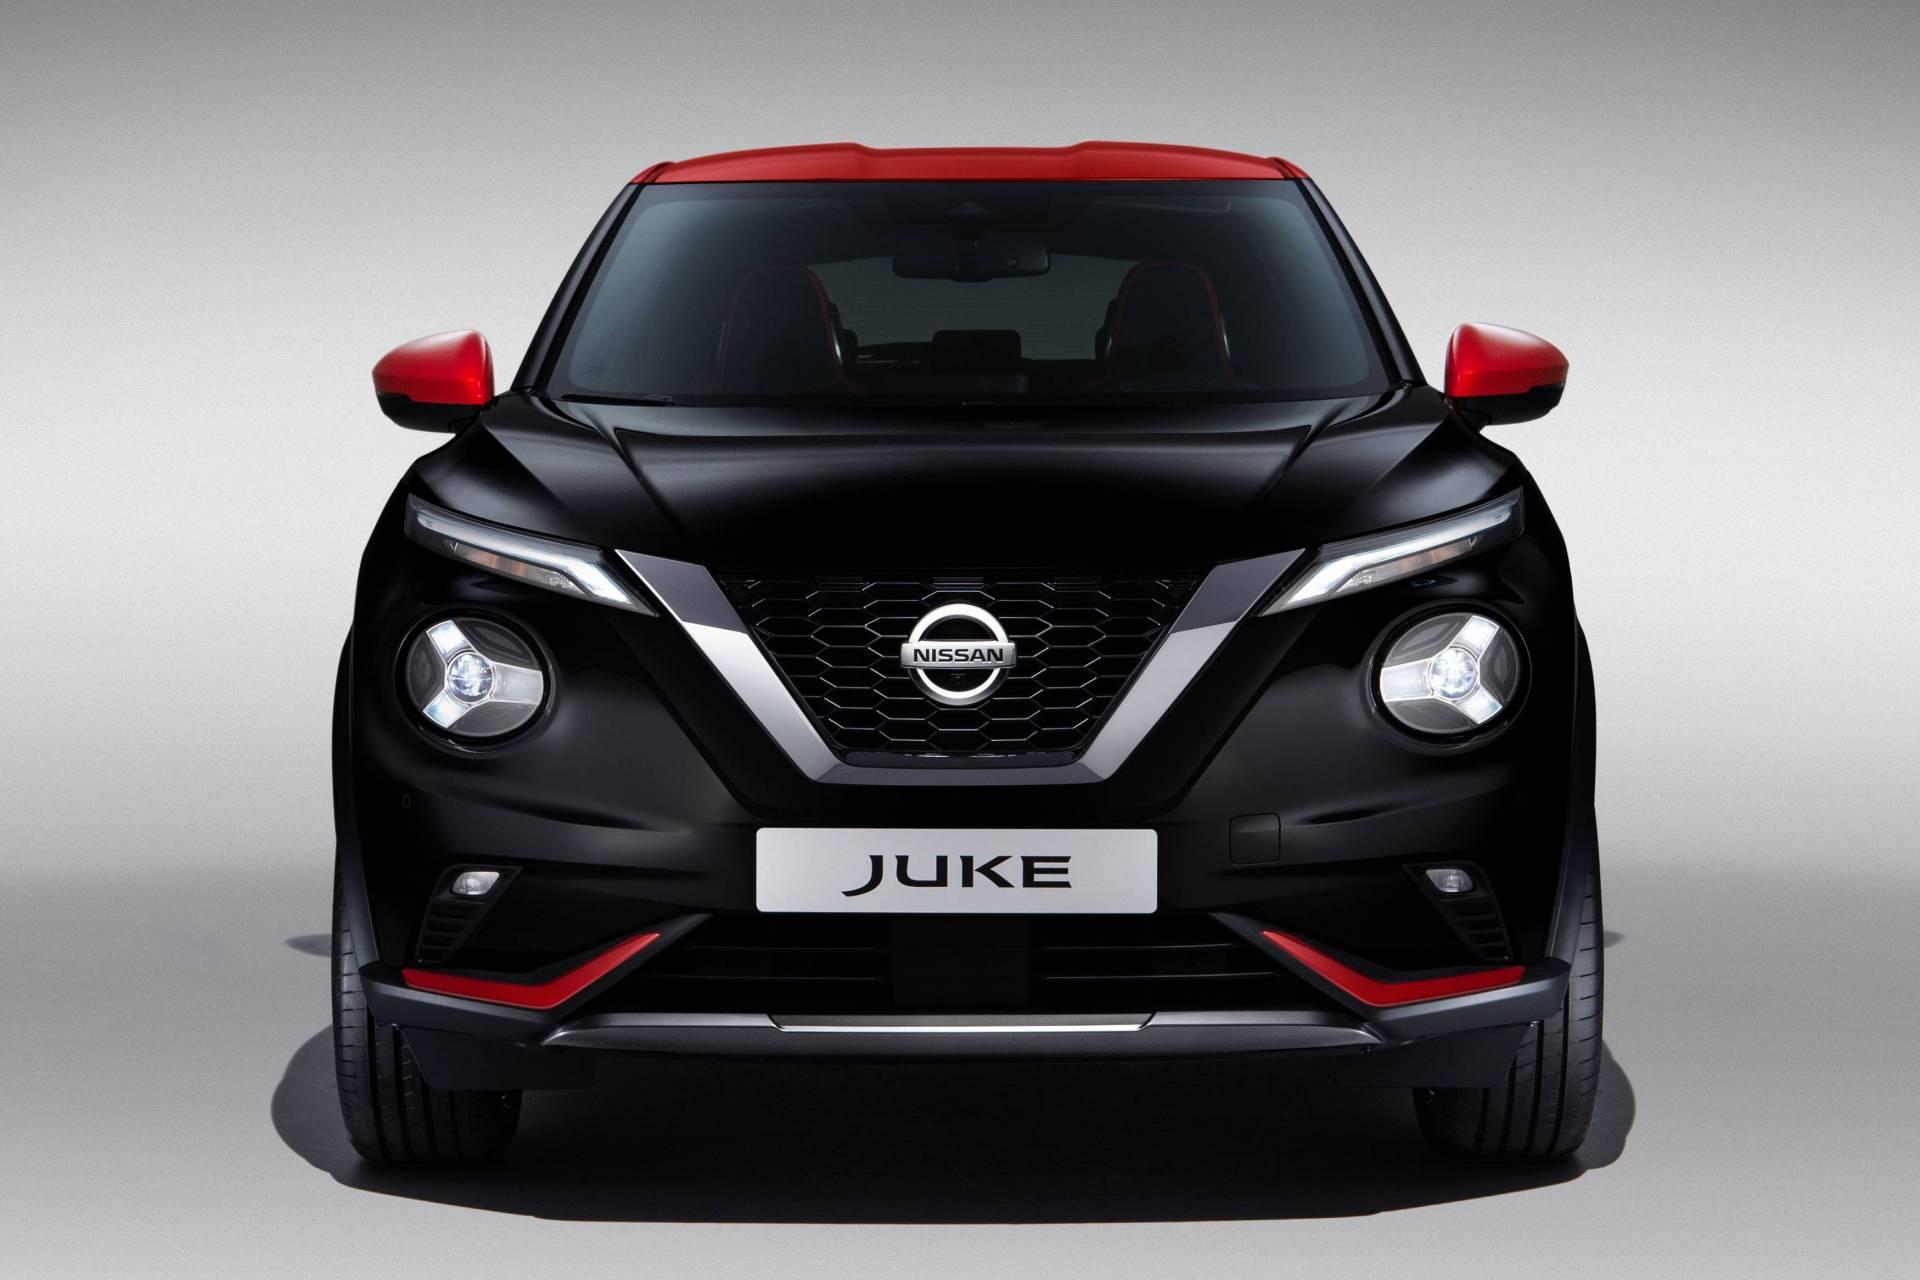 Nissan Juke 2020 เปิดตัวที่อังกฤษเป็นที่แรก เคาะราคาเริ่มเพียง 6.5 แสนบาท